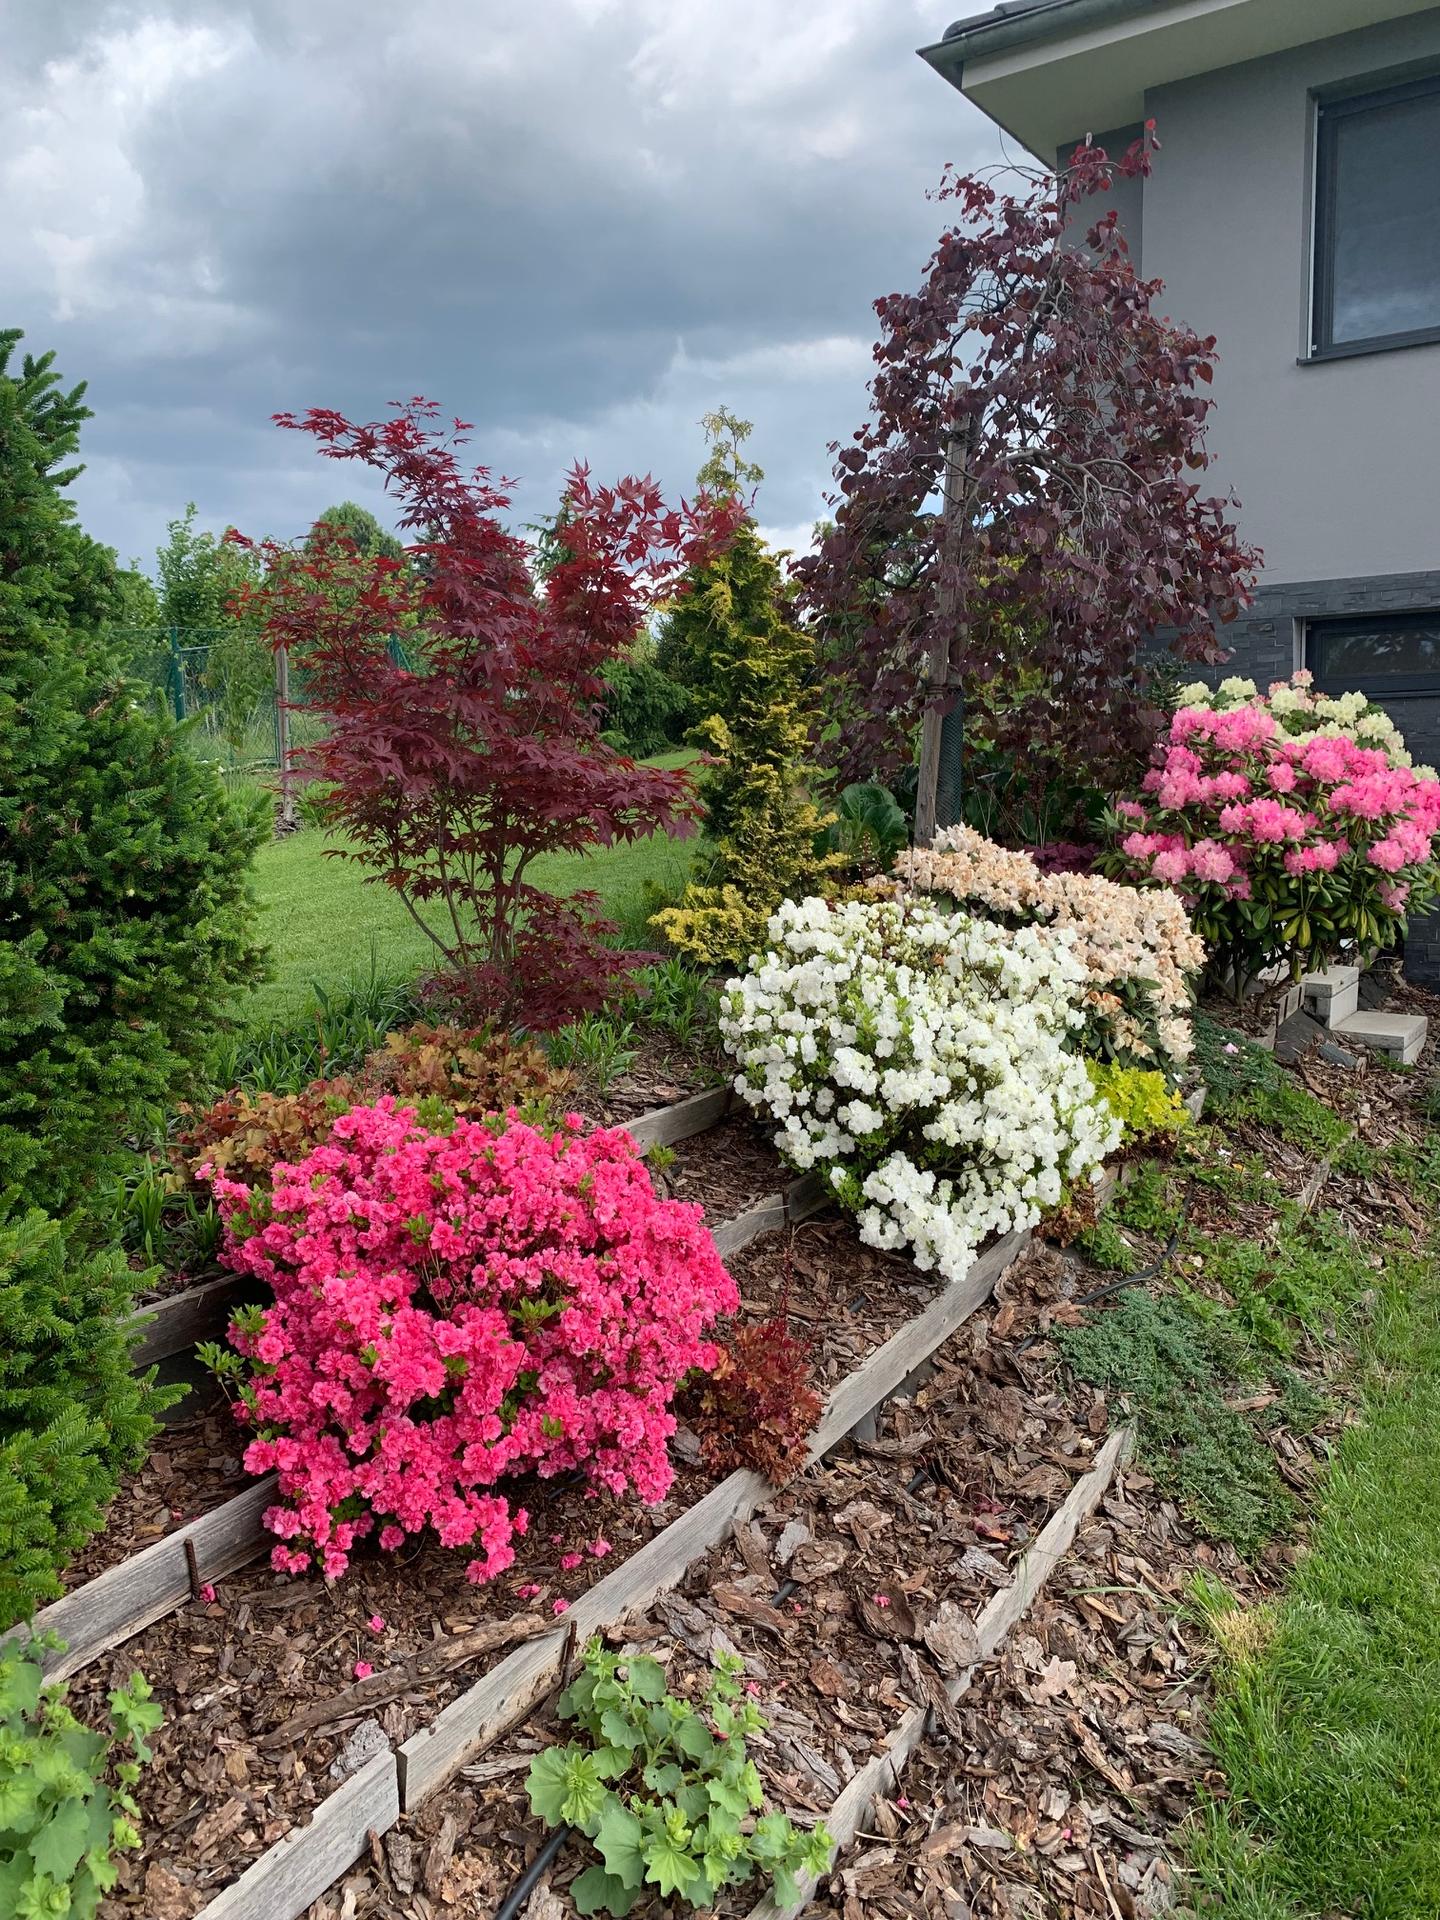 Zahrada květen 2022 - 5 let od výsadby - azalky a rododendrony v plném květu